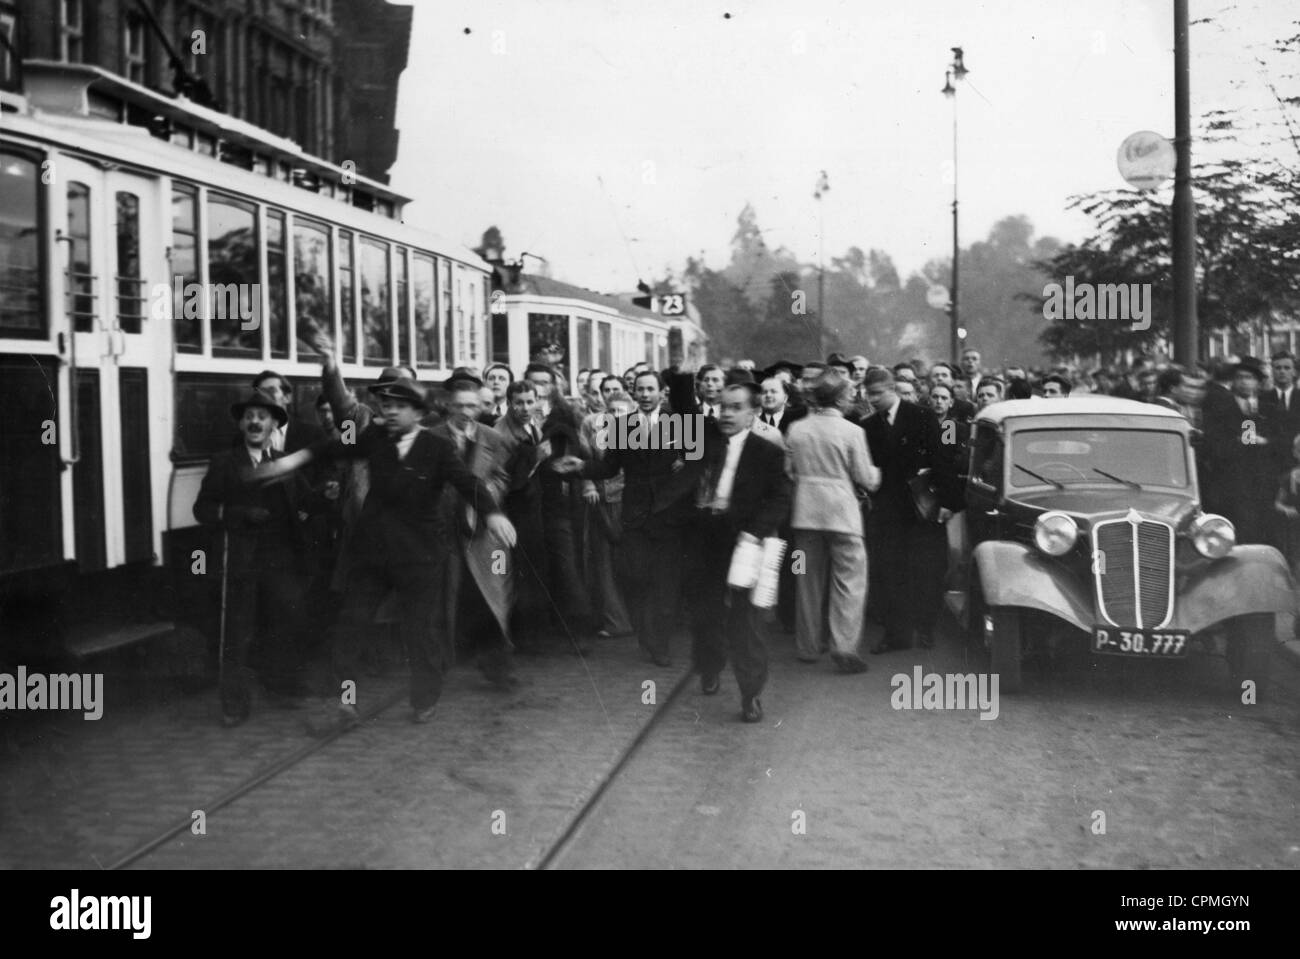 Les tchèques de protester contre la politique allemande au cours de la crise des Sudètes, 1938 Banque D'Images